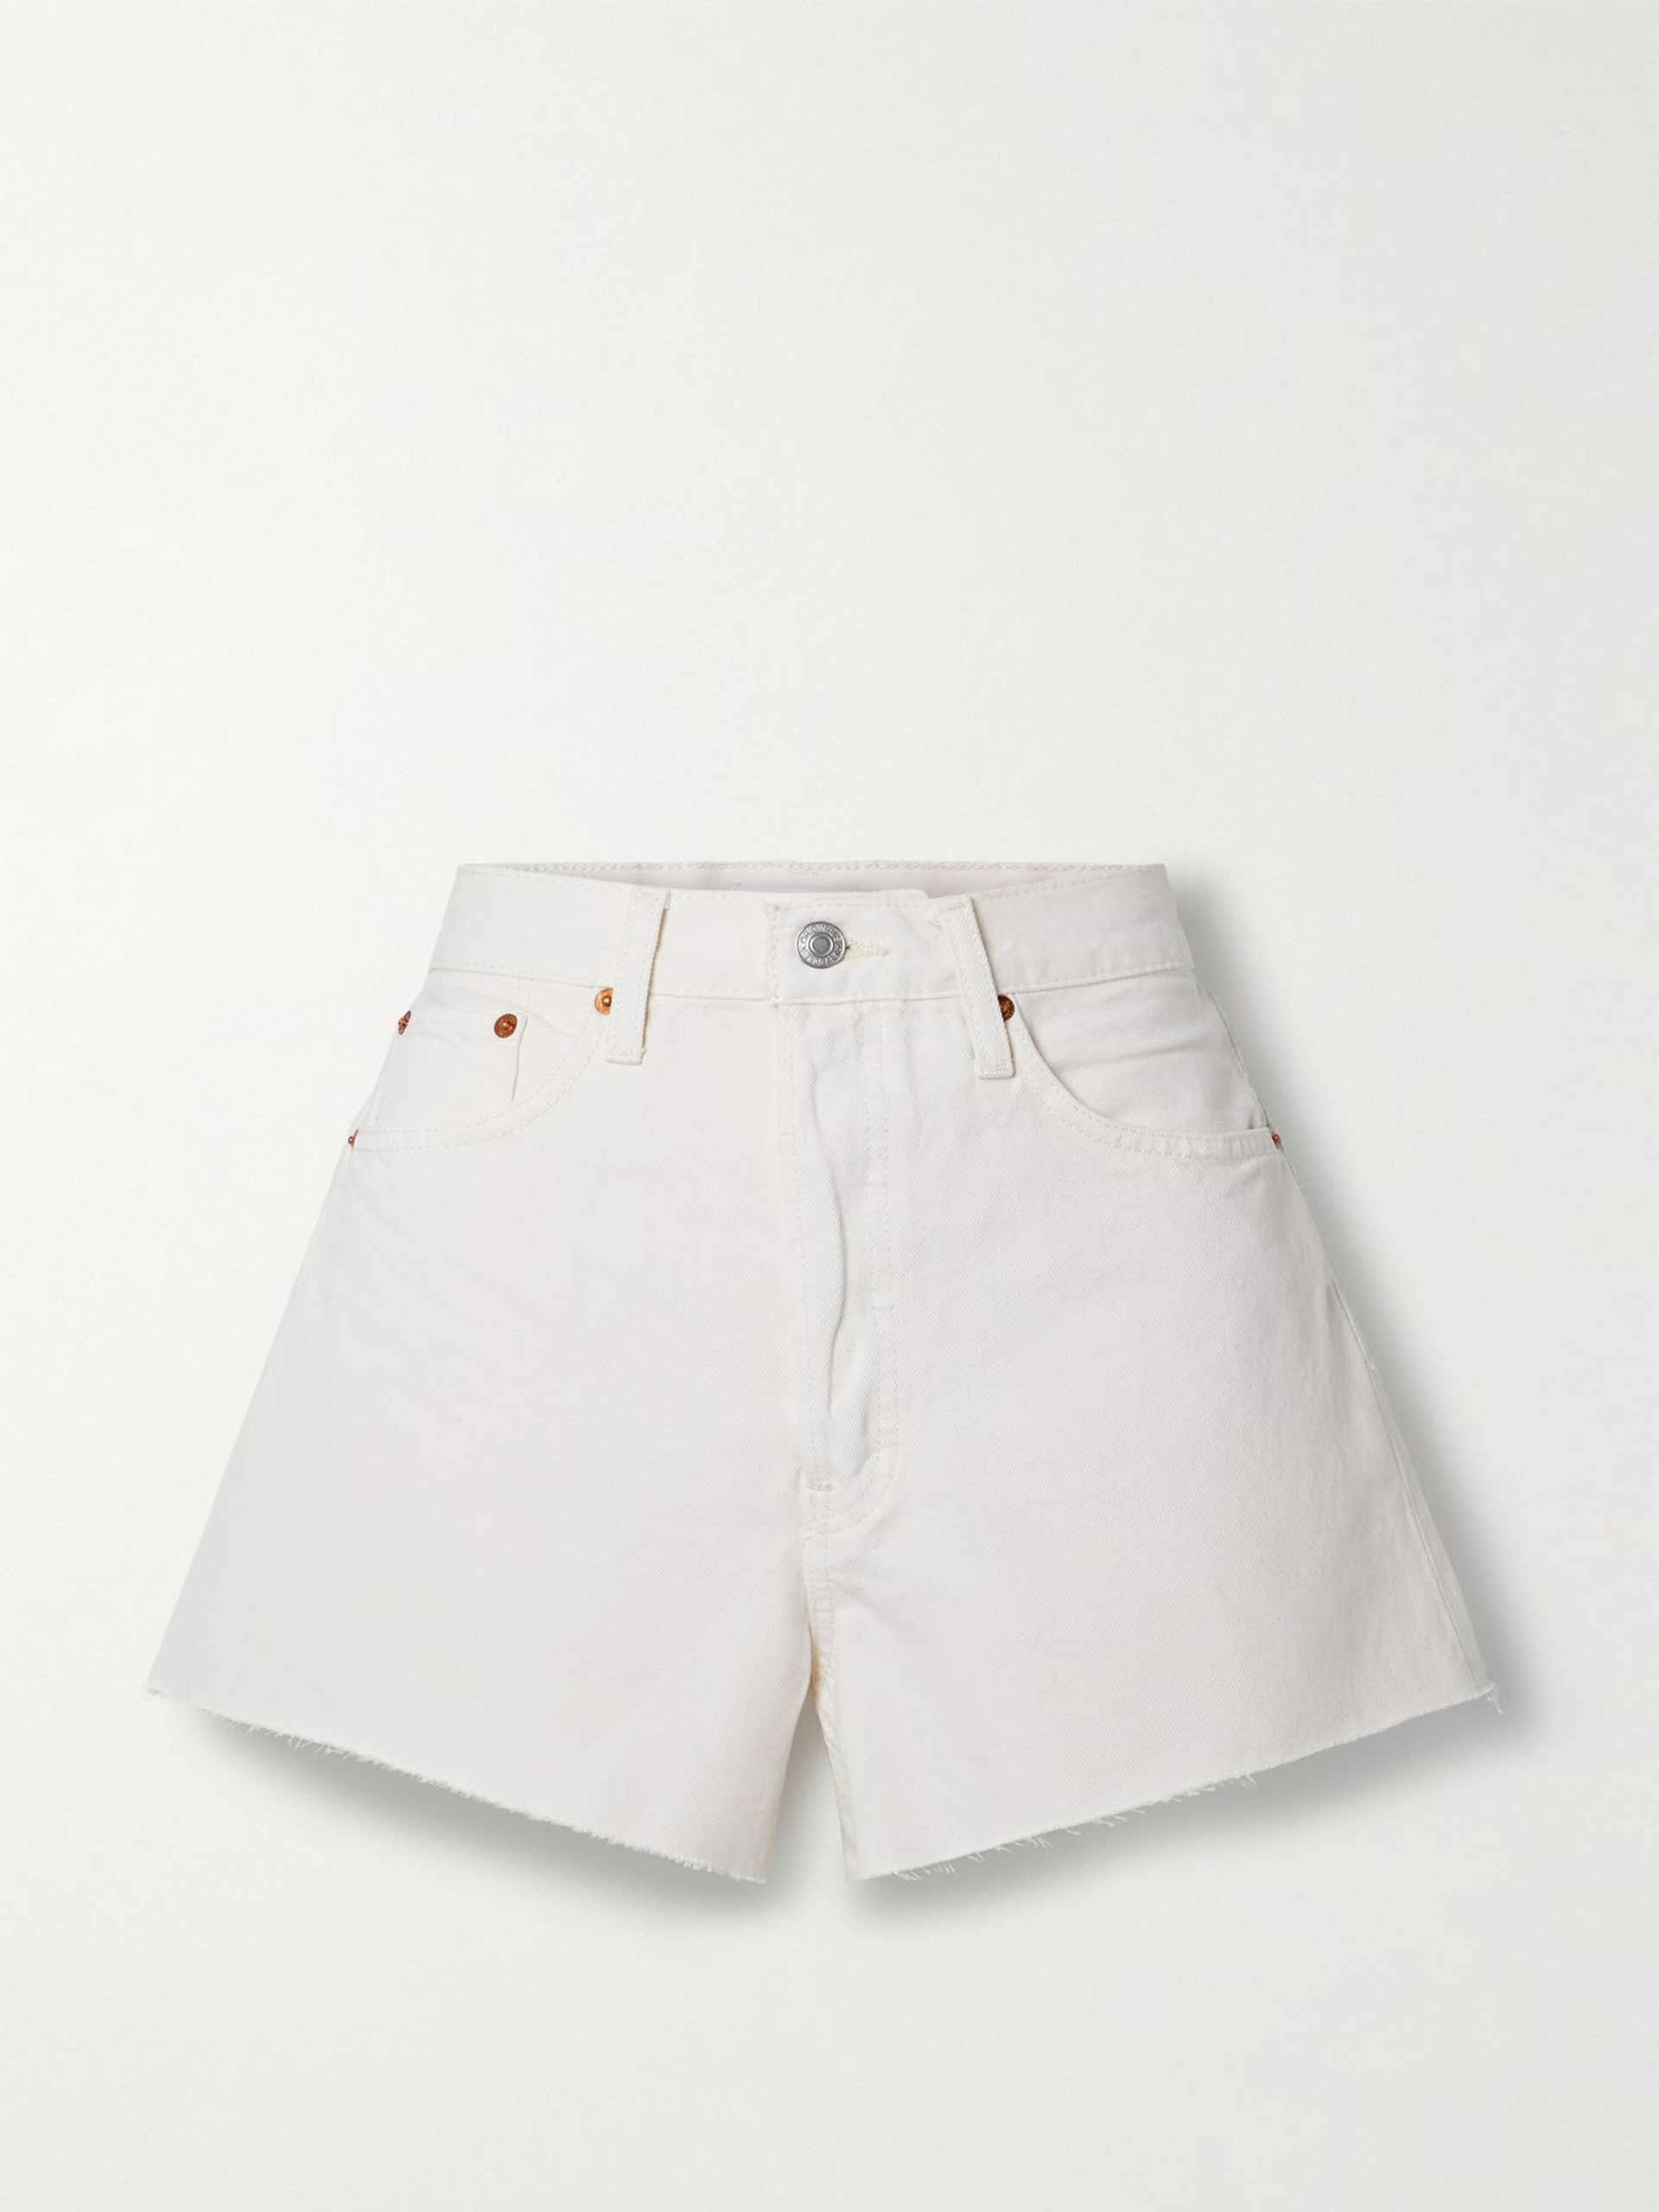 90s frayed off-white denim shorts